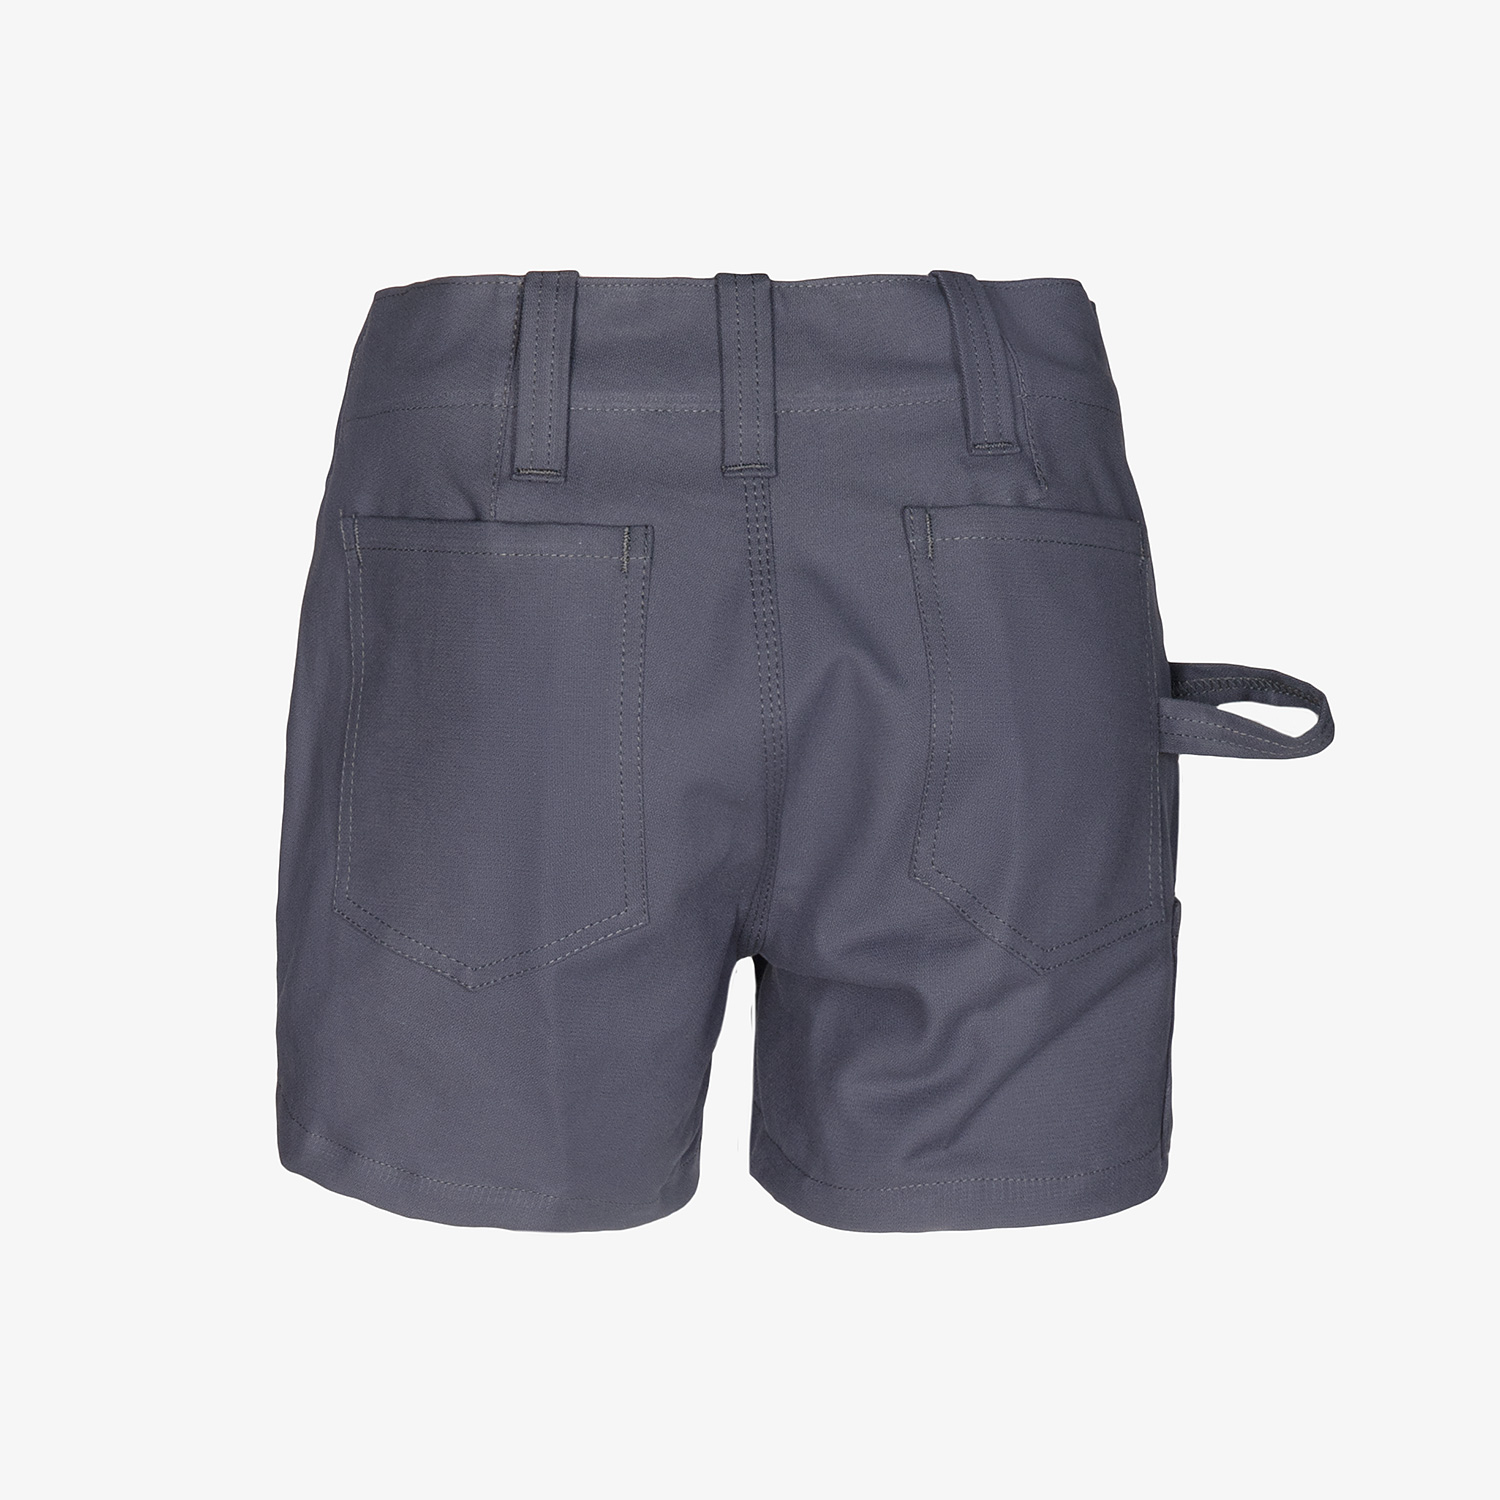 KRÄHE summer guild shorts